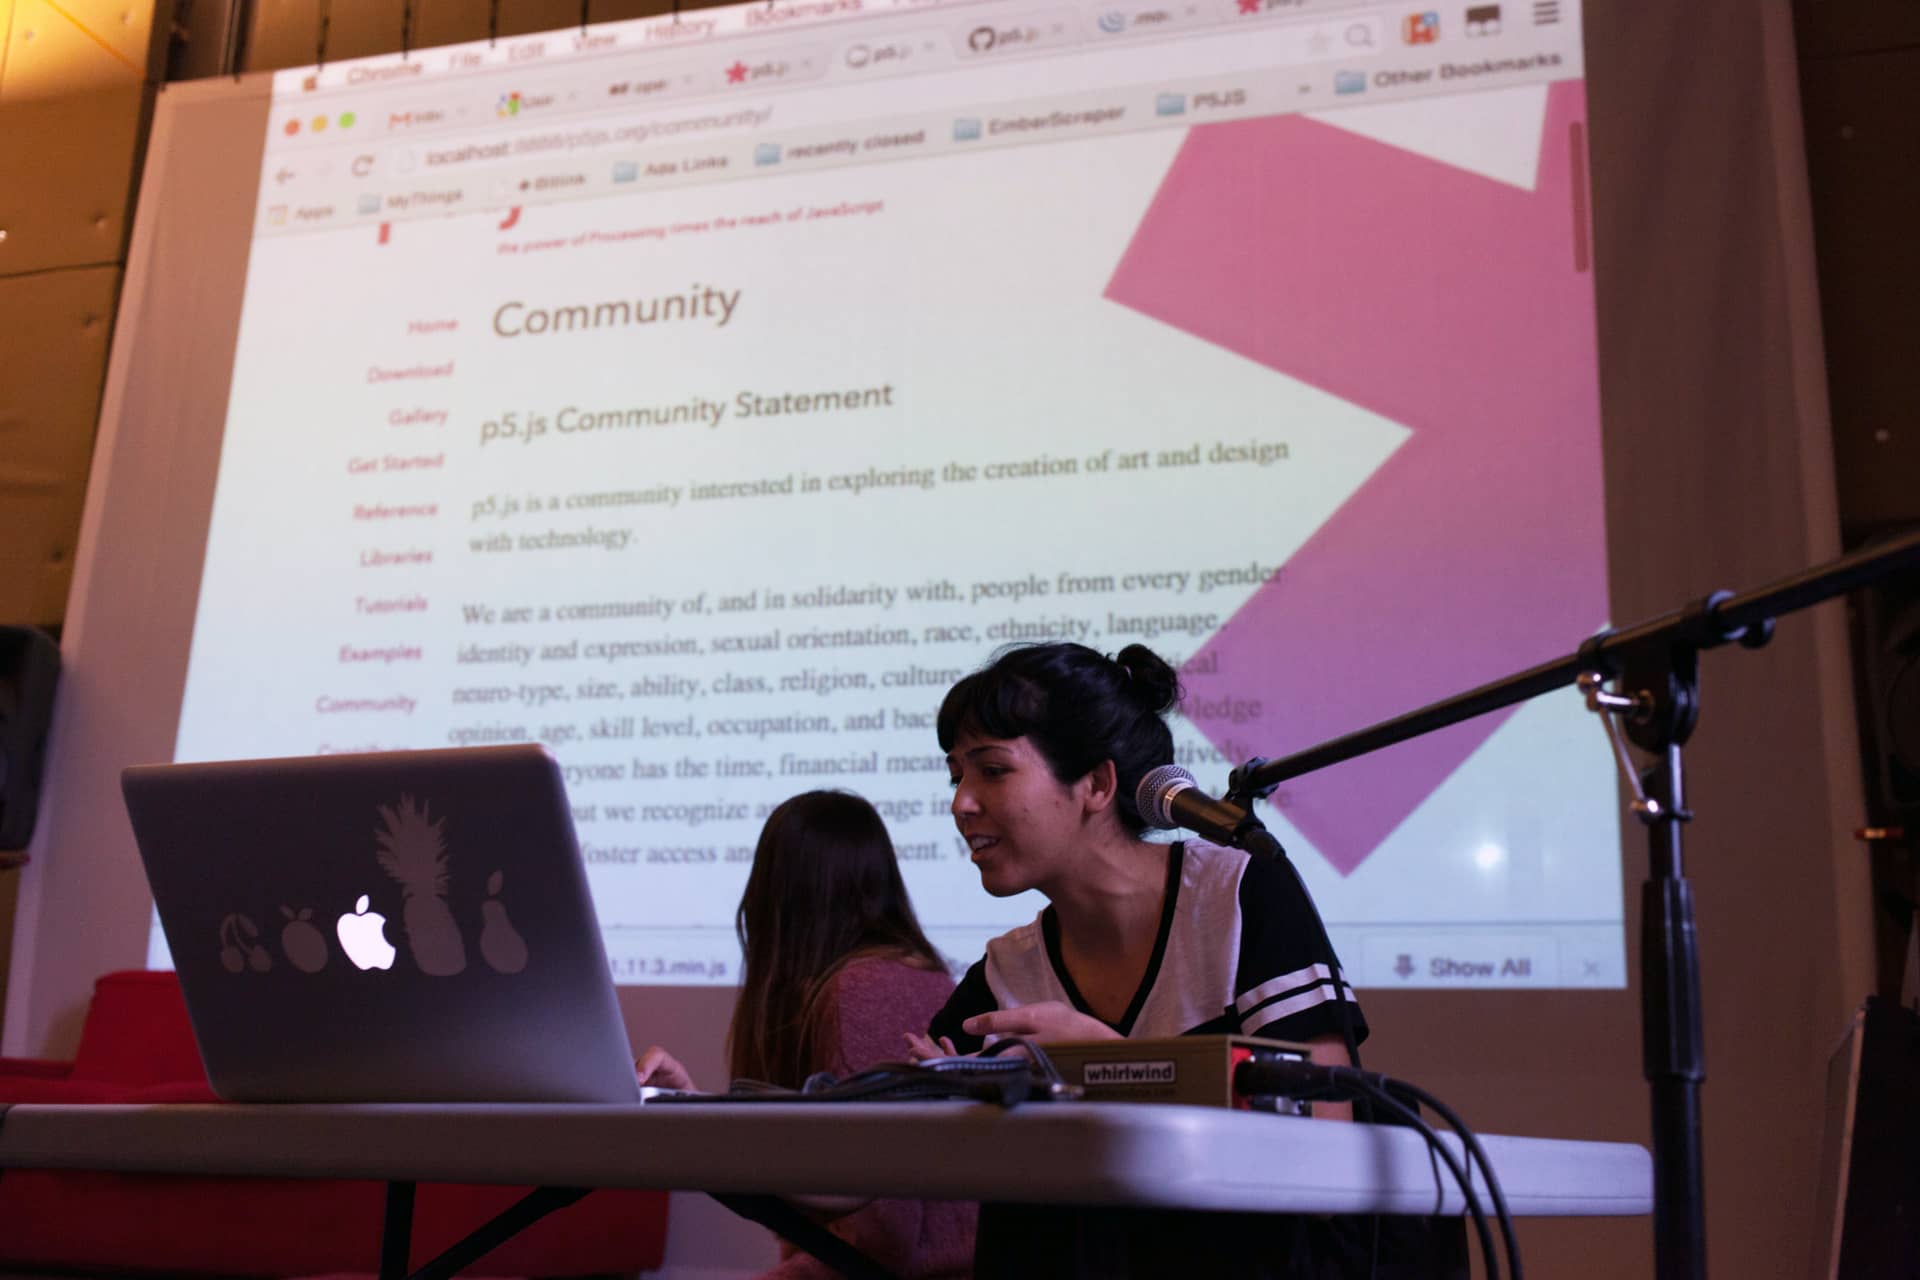 Mujer presenta la Declaración de comunidad en torno a p5.js utilizando su computadora"